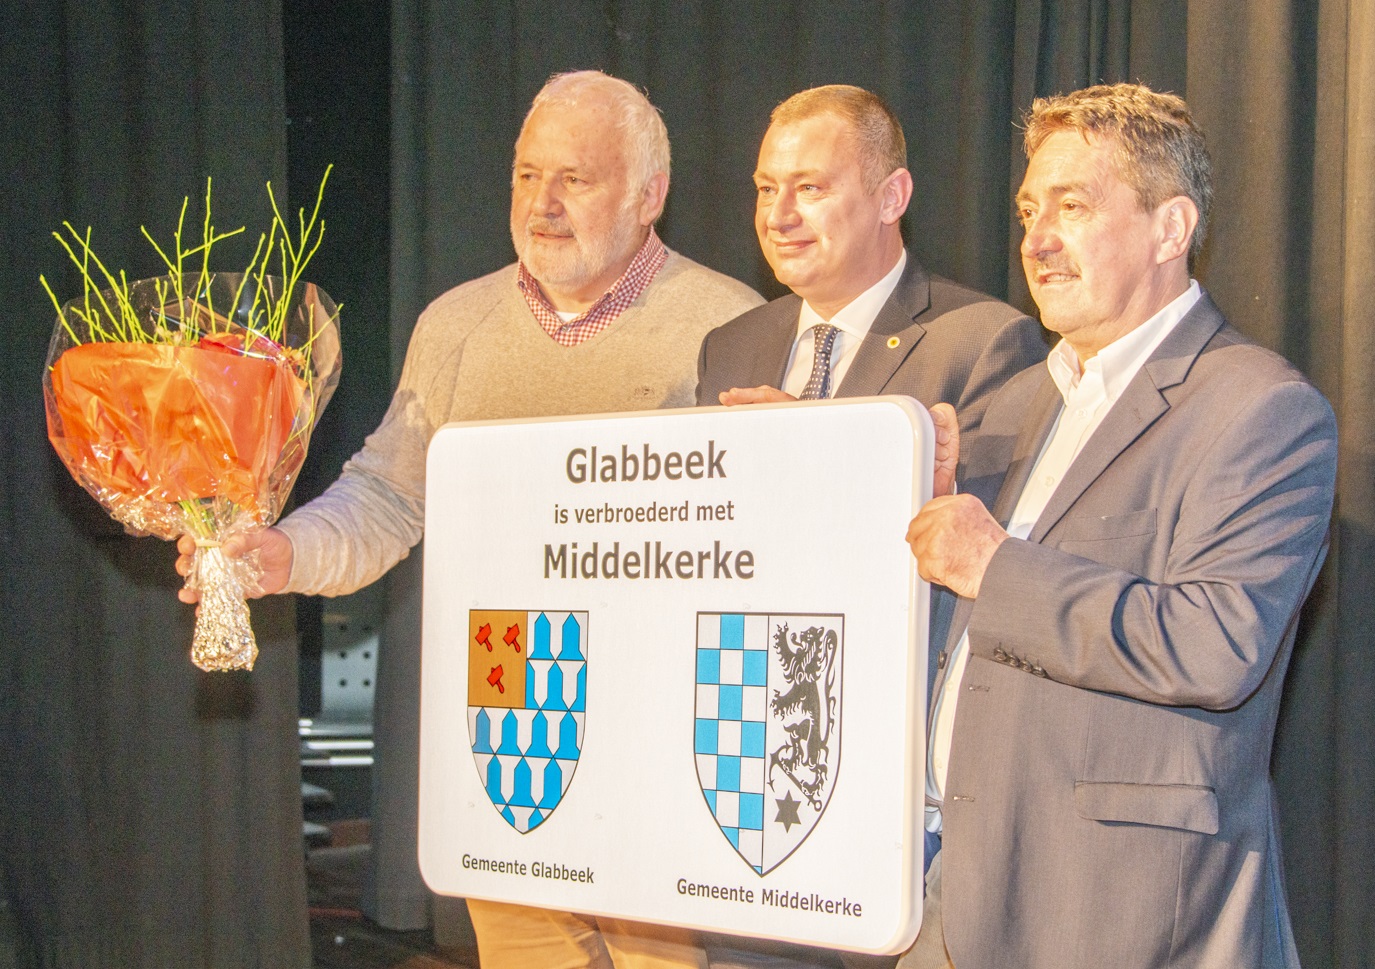 Middelkerke en Glabbeek hebben een geschiedenis die meer dan 100 jaar terug gaat